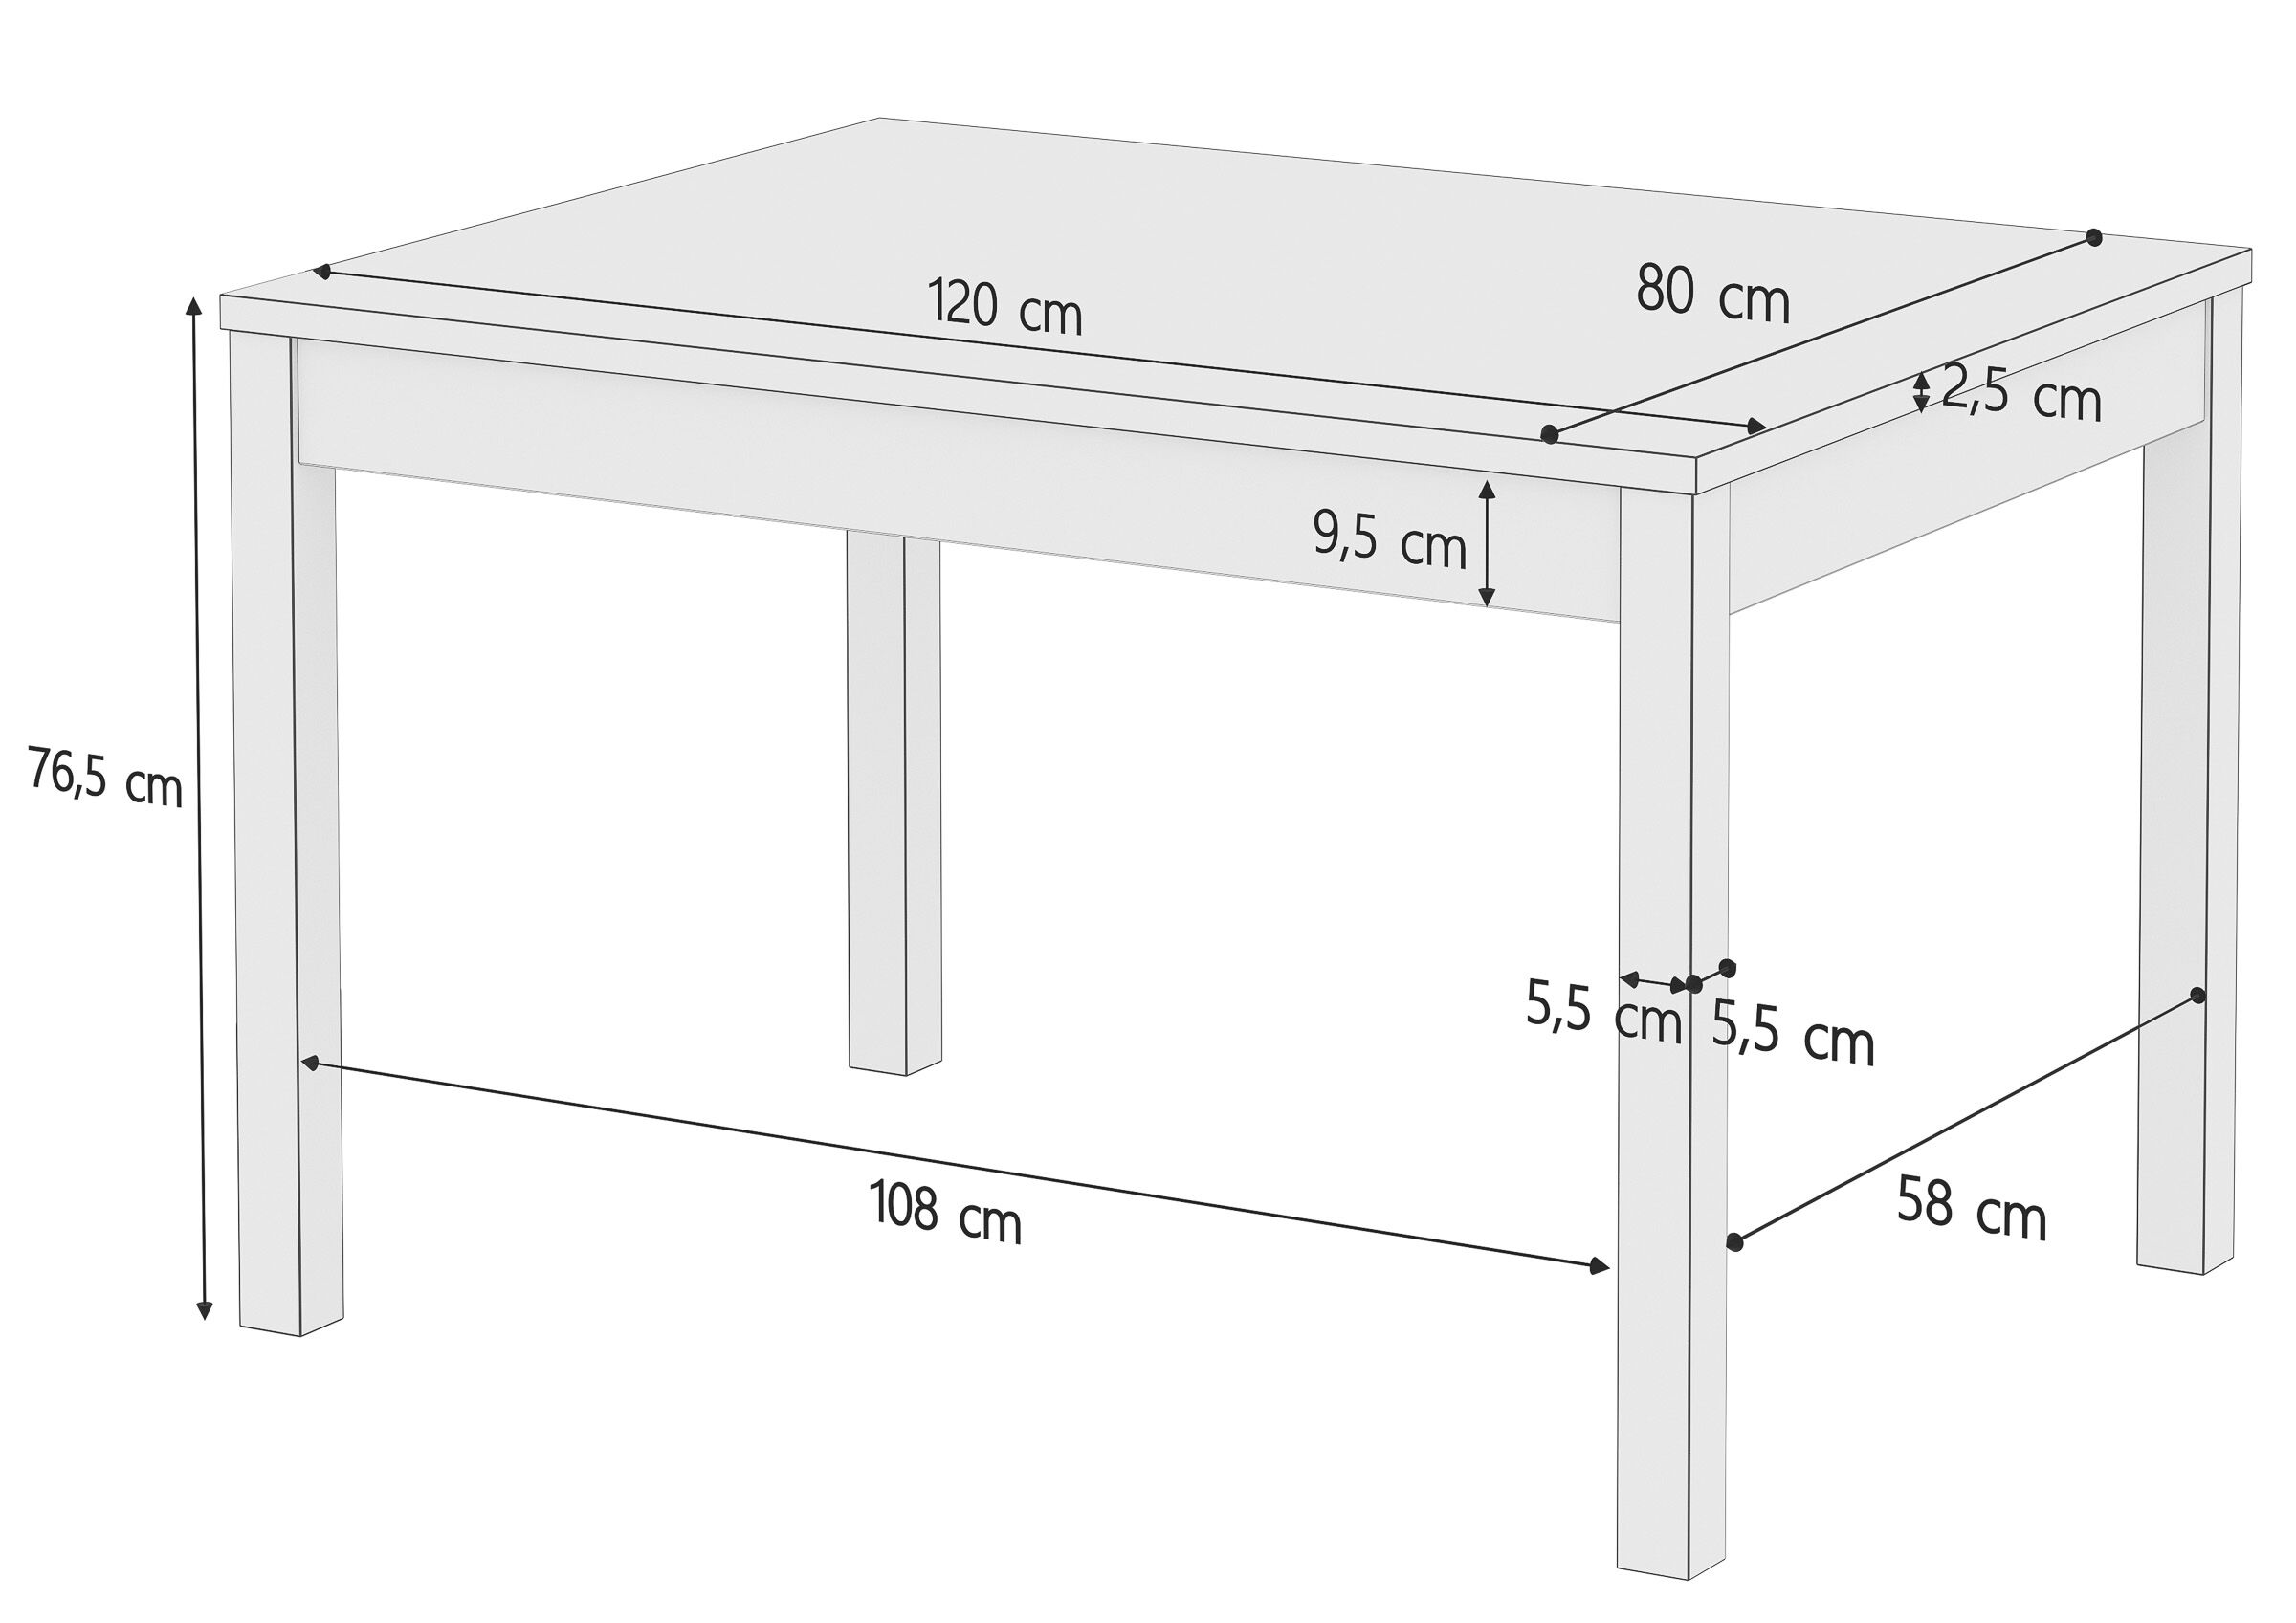 Stabiler Esszimmertisch aus massiver Kiefer, waschweiß lackiert, Tischplatte eiche gebeizt, 80 x 120 cm, Tischbeine Glatt, Schema mit Maße